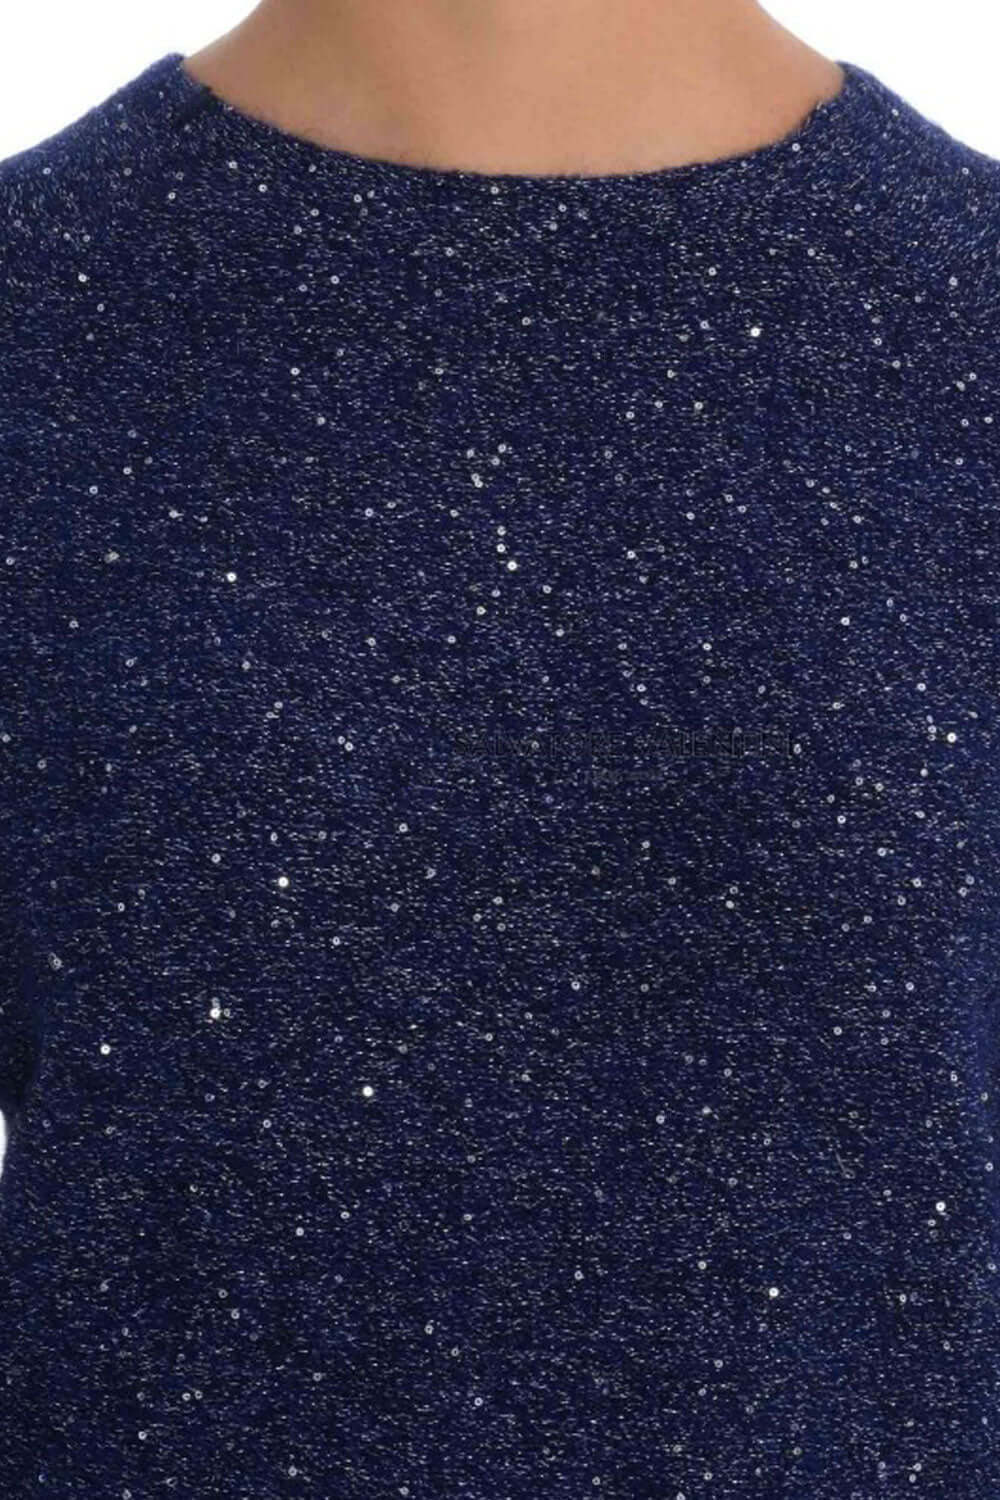 Maglia girocollo in lana glitter - SUN 68 Maglia SUN 68   